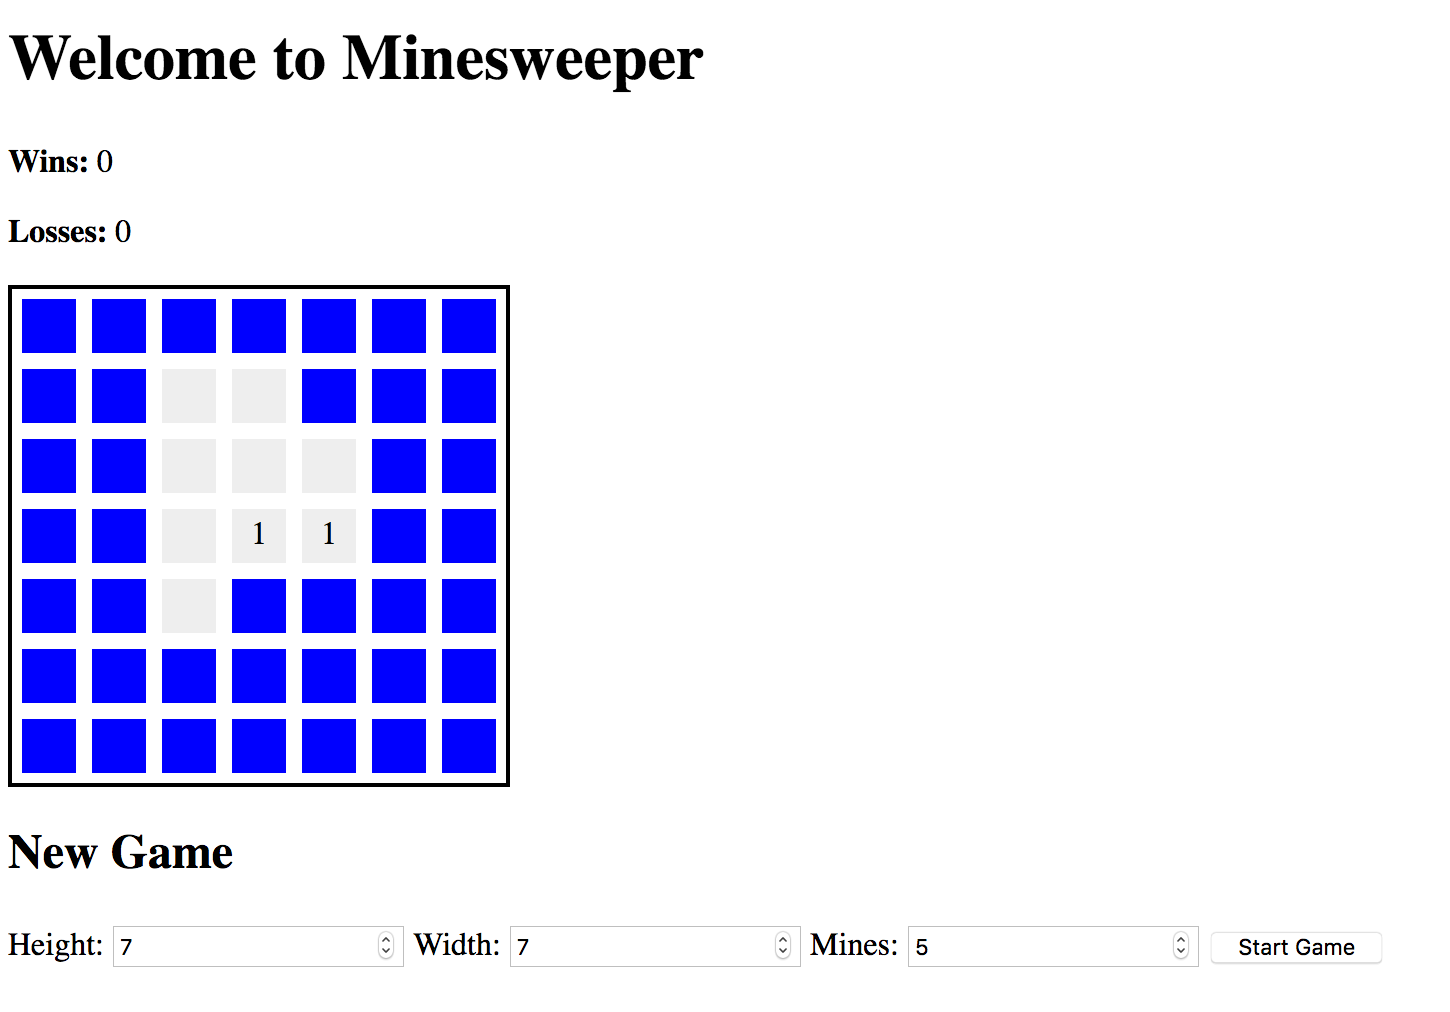 screenshot of a Minesweeper game